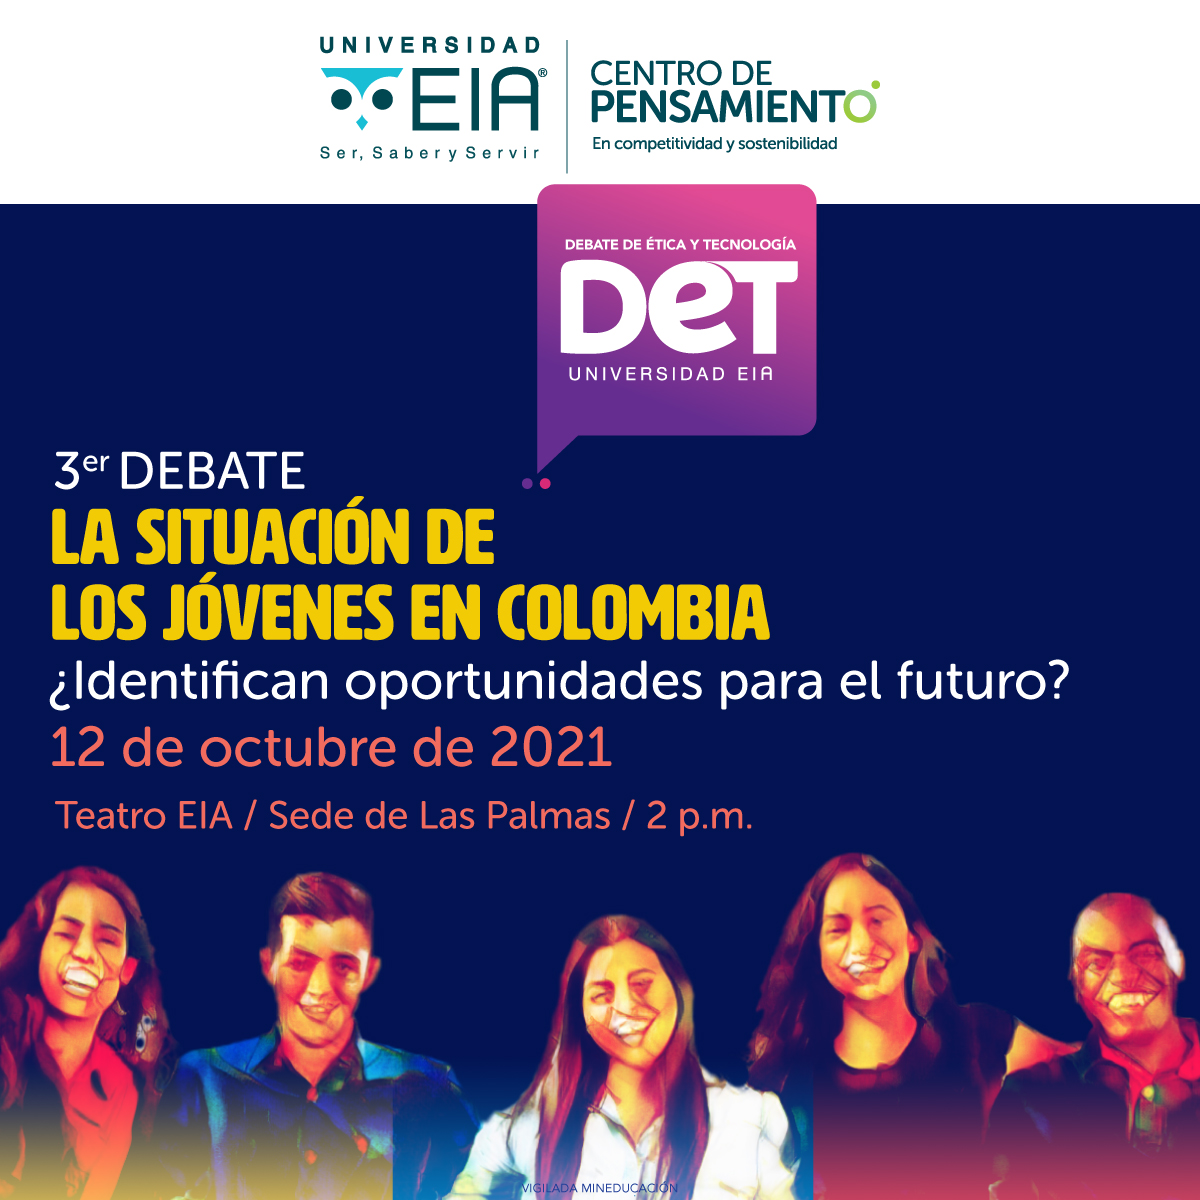 Tercer Debate de Ética y Tecnología: la situación de los jóvenes en Colombia